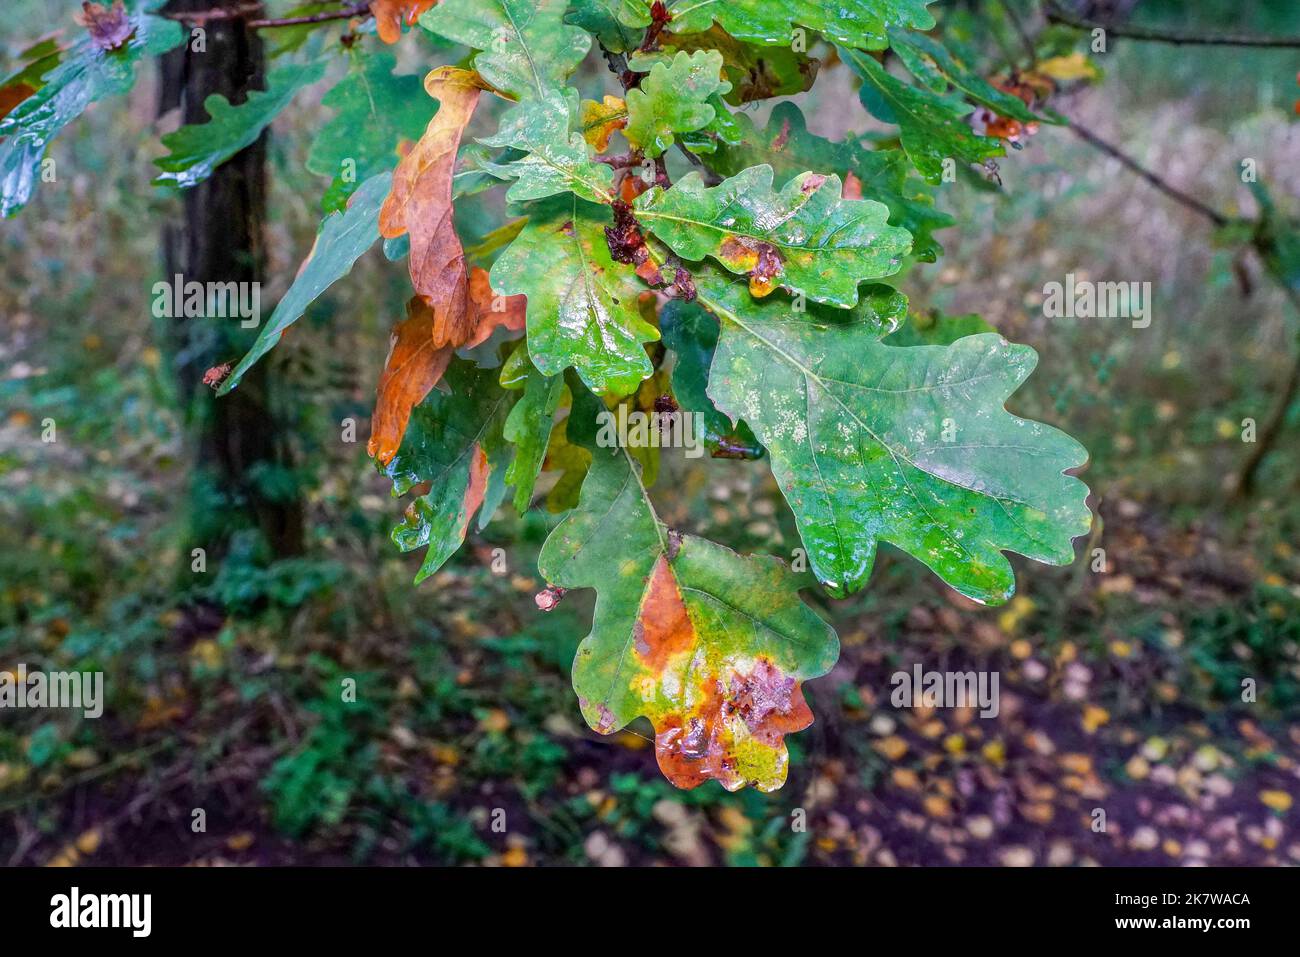 Herbstlich verfärbtes Eichenlaub am Zweig Foto Stock